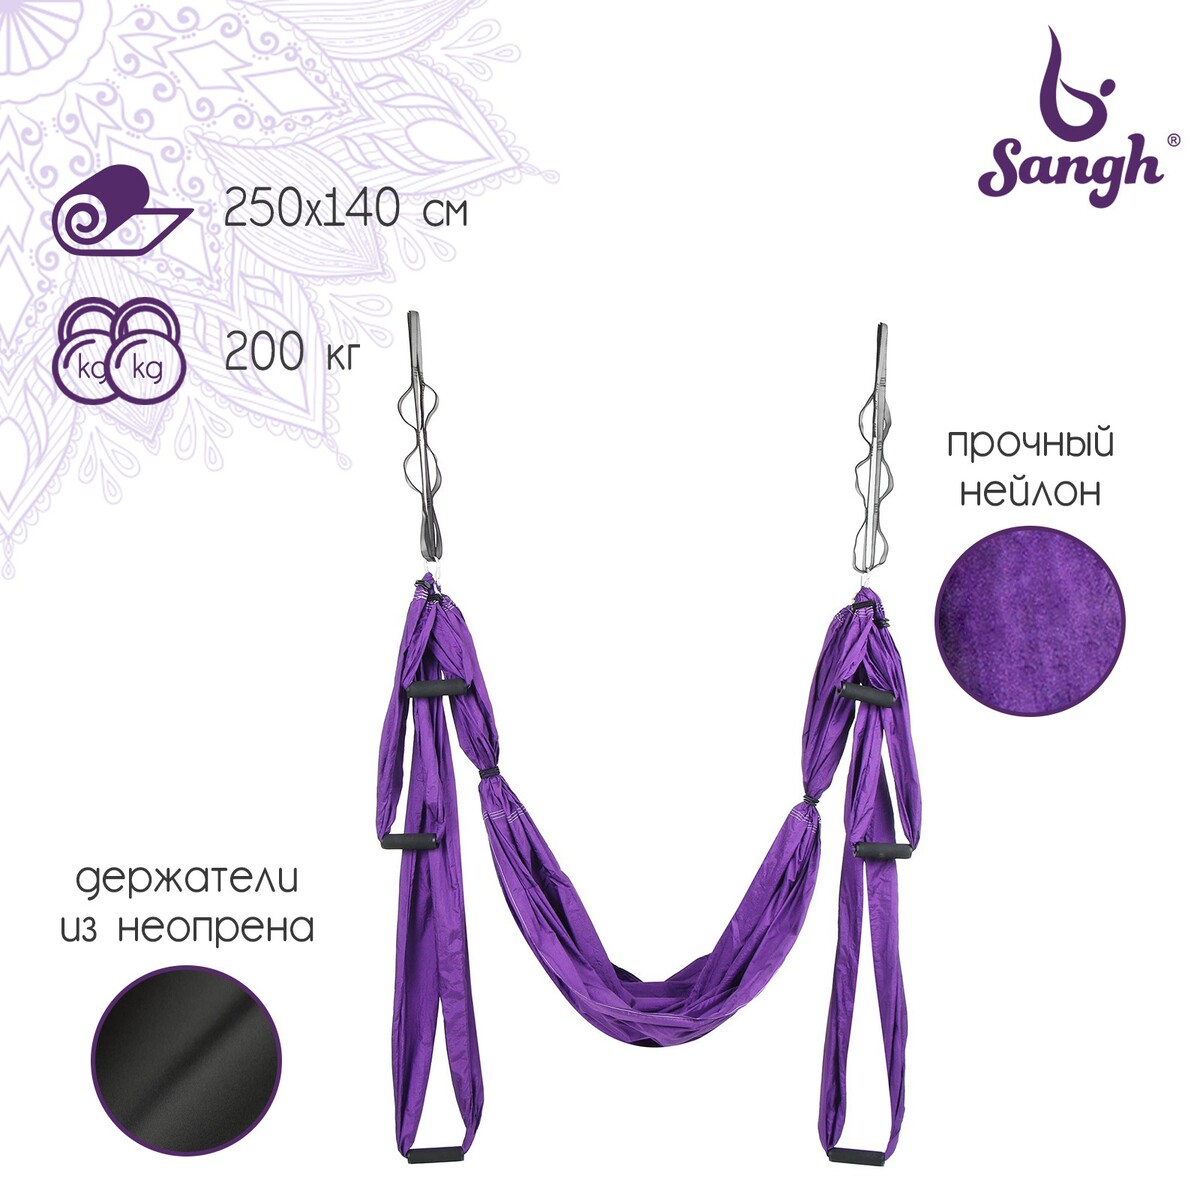 Гамак для йоги sangh, 250×140 см, цвет фиолетовый гамак onlitop sj a12 431692